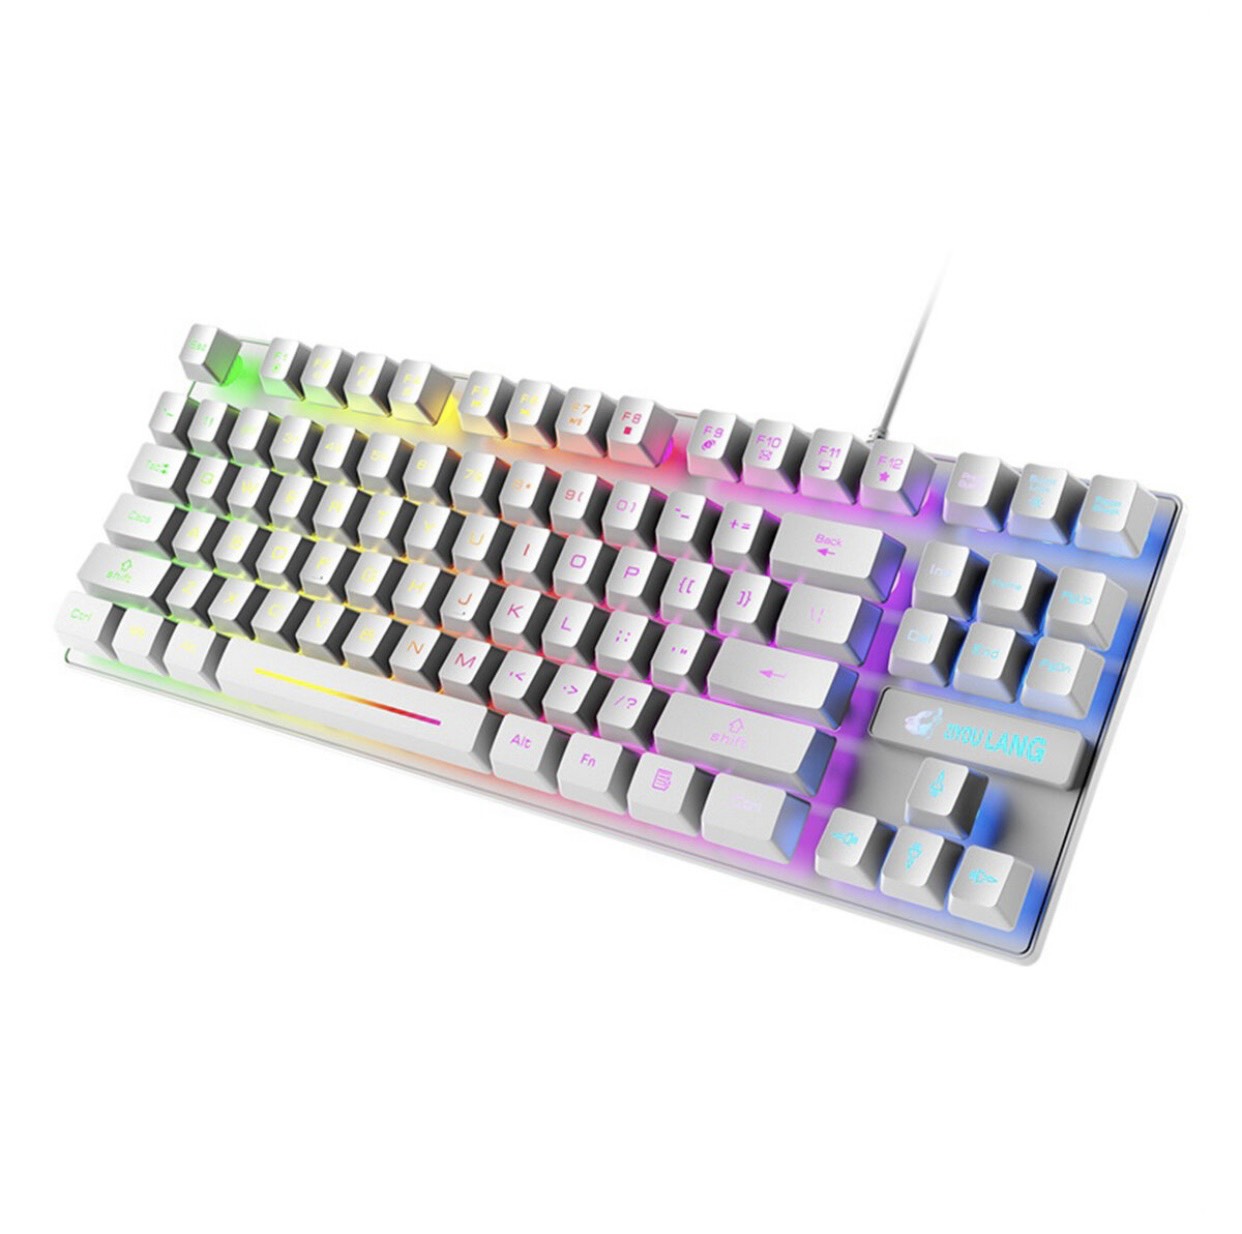 Bàn phím giả cơ 87 phím Led Rainbow dành cho Máy Tính PC, Laptop - Hàng chính hãng